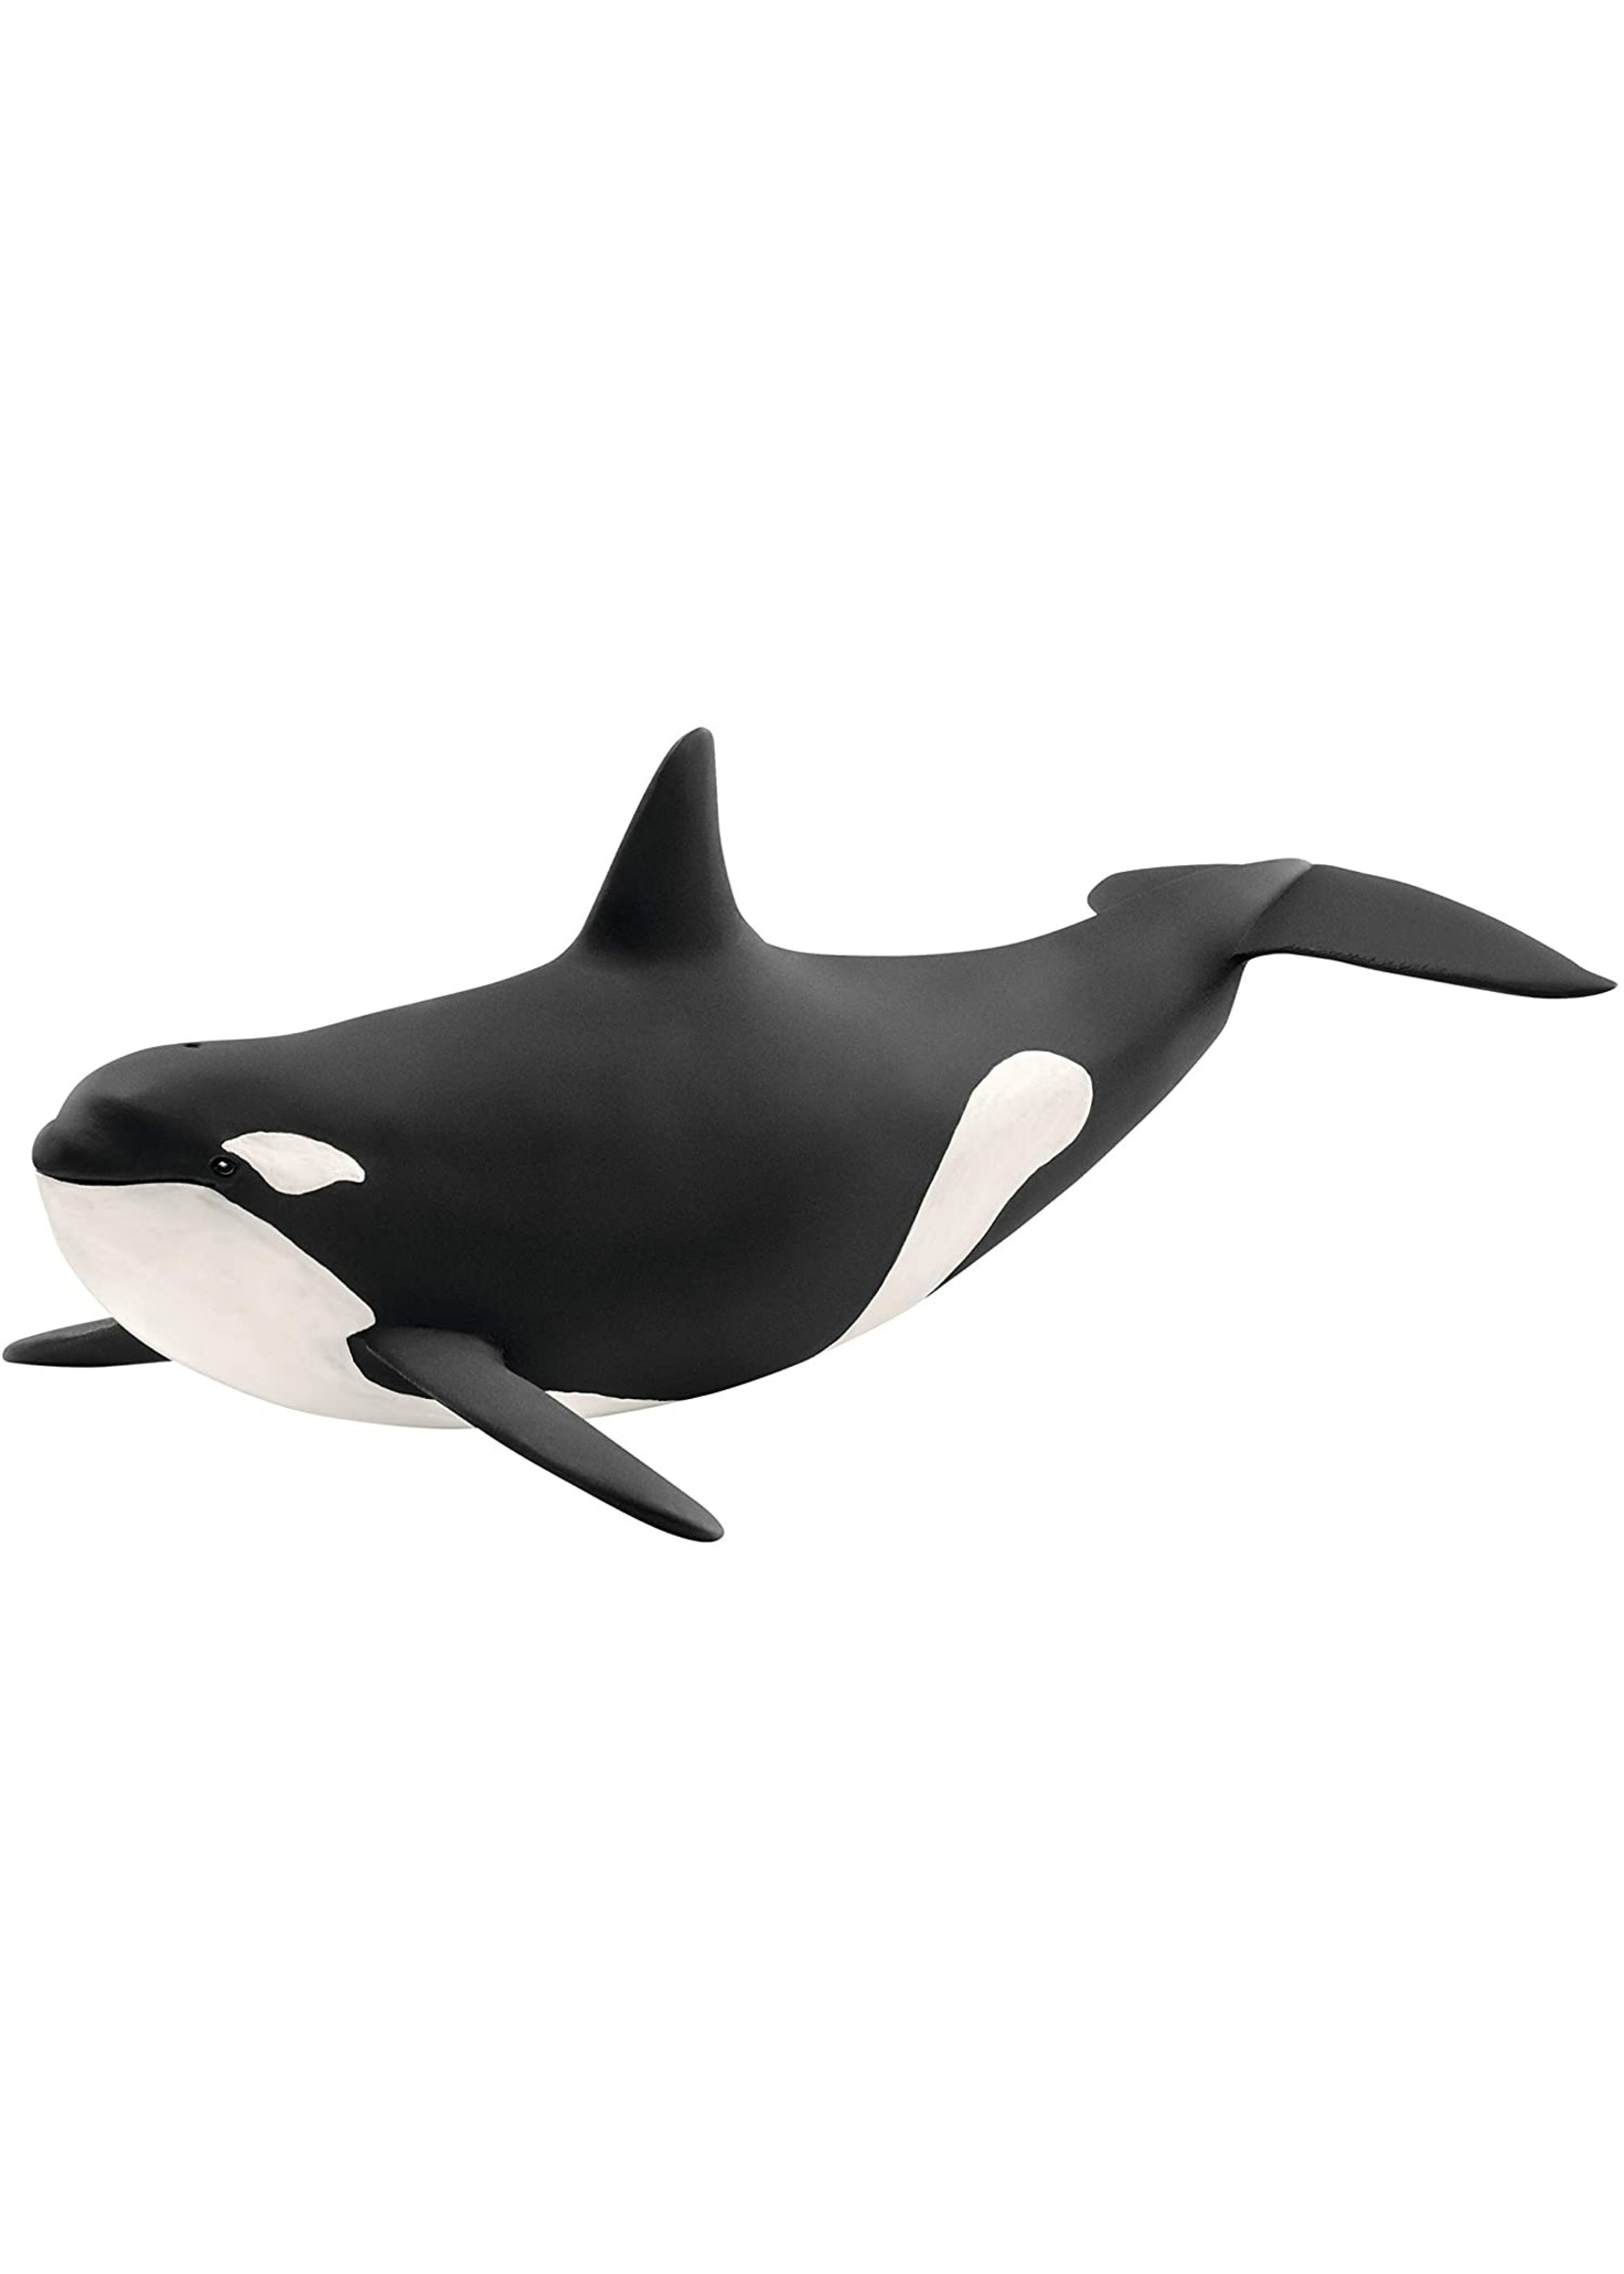 Schleich 14807 - Killer Whale